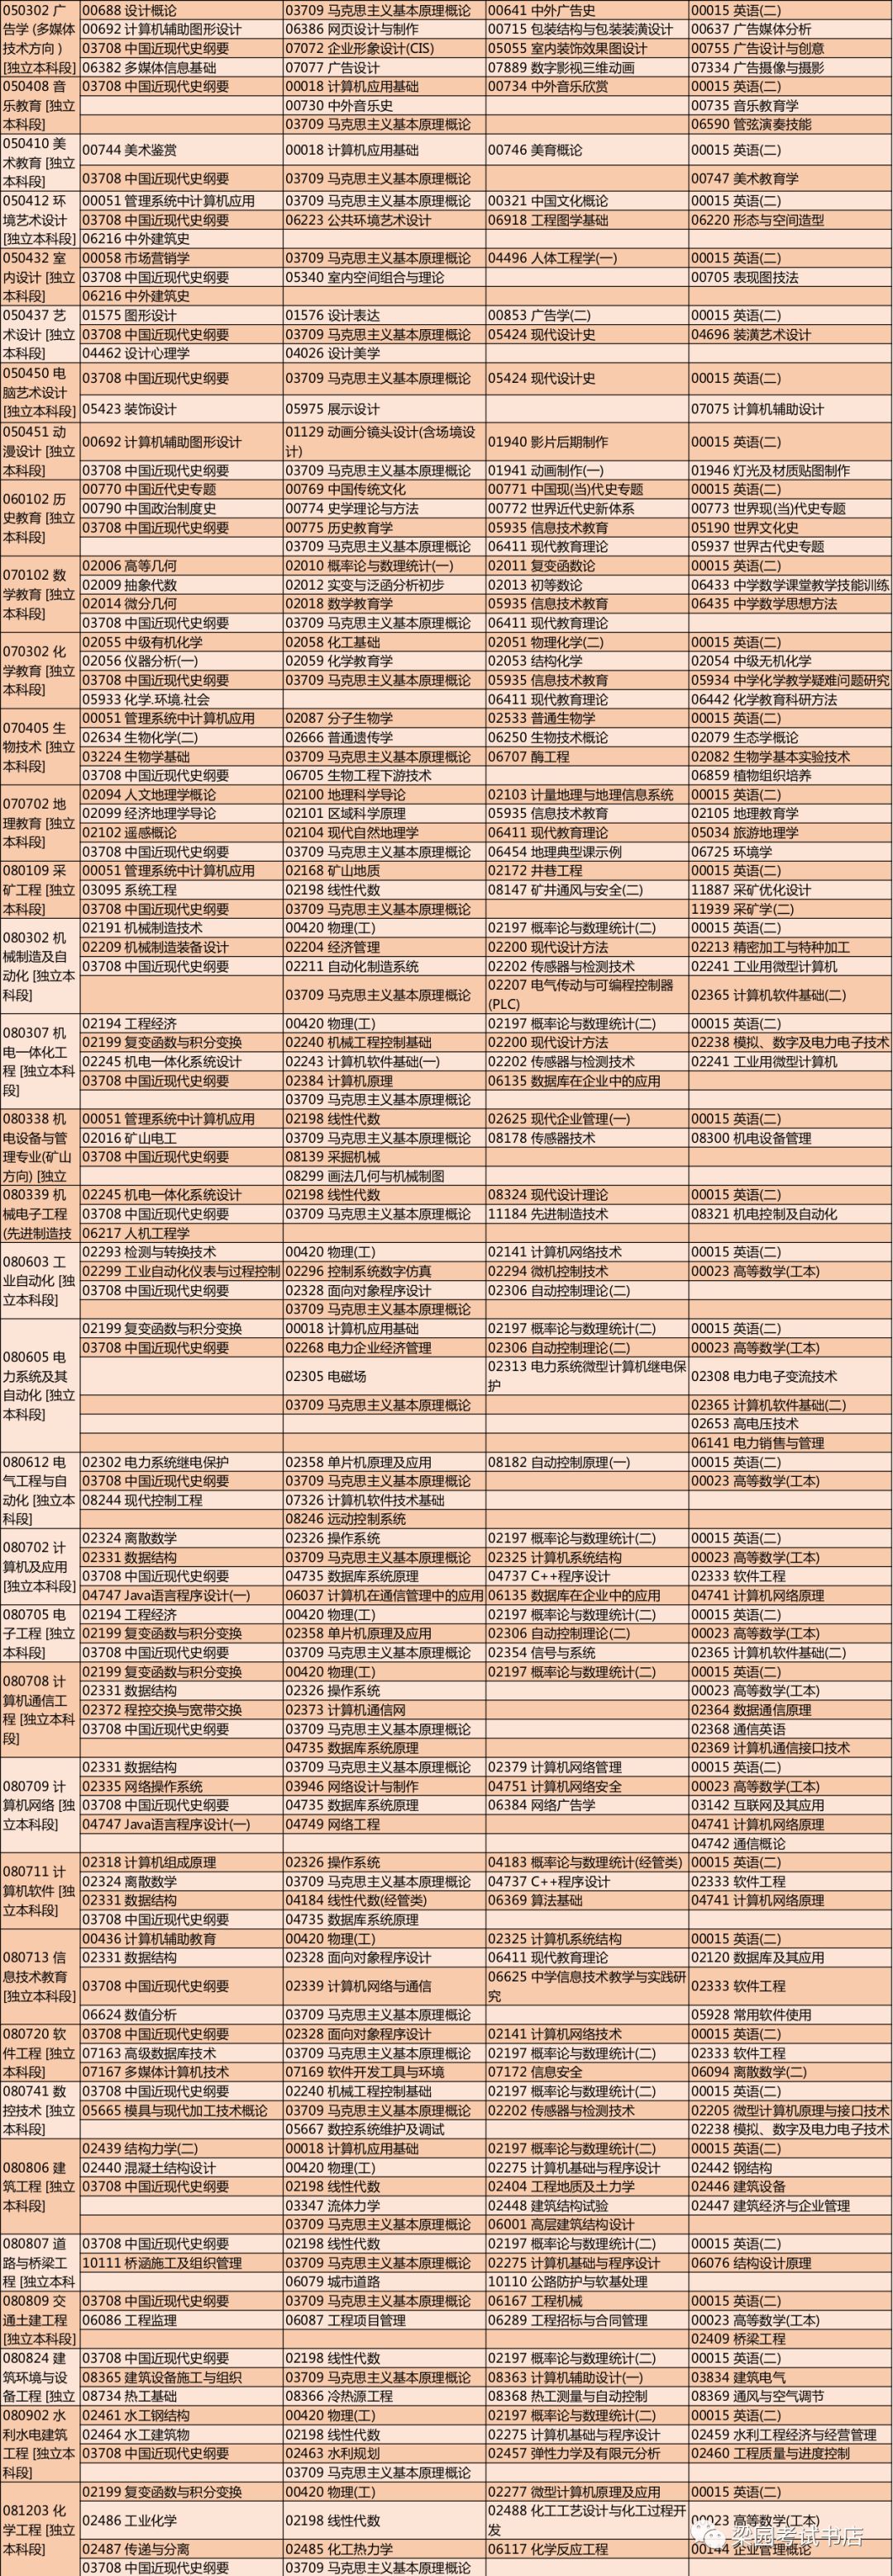 河南省高等教育自学考试2019年上半年报名考